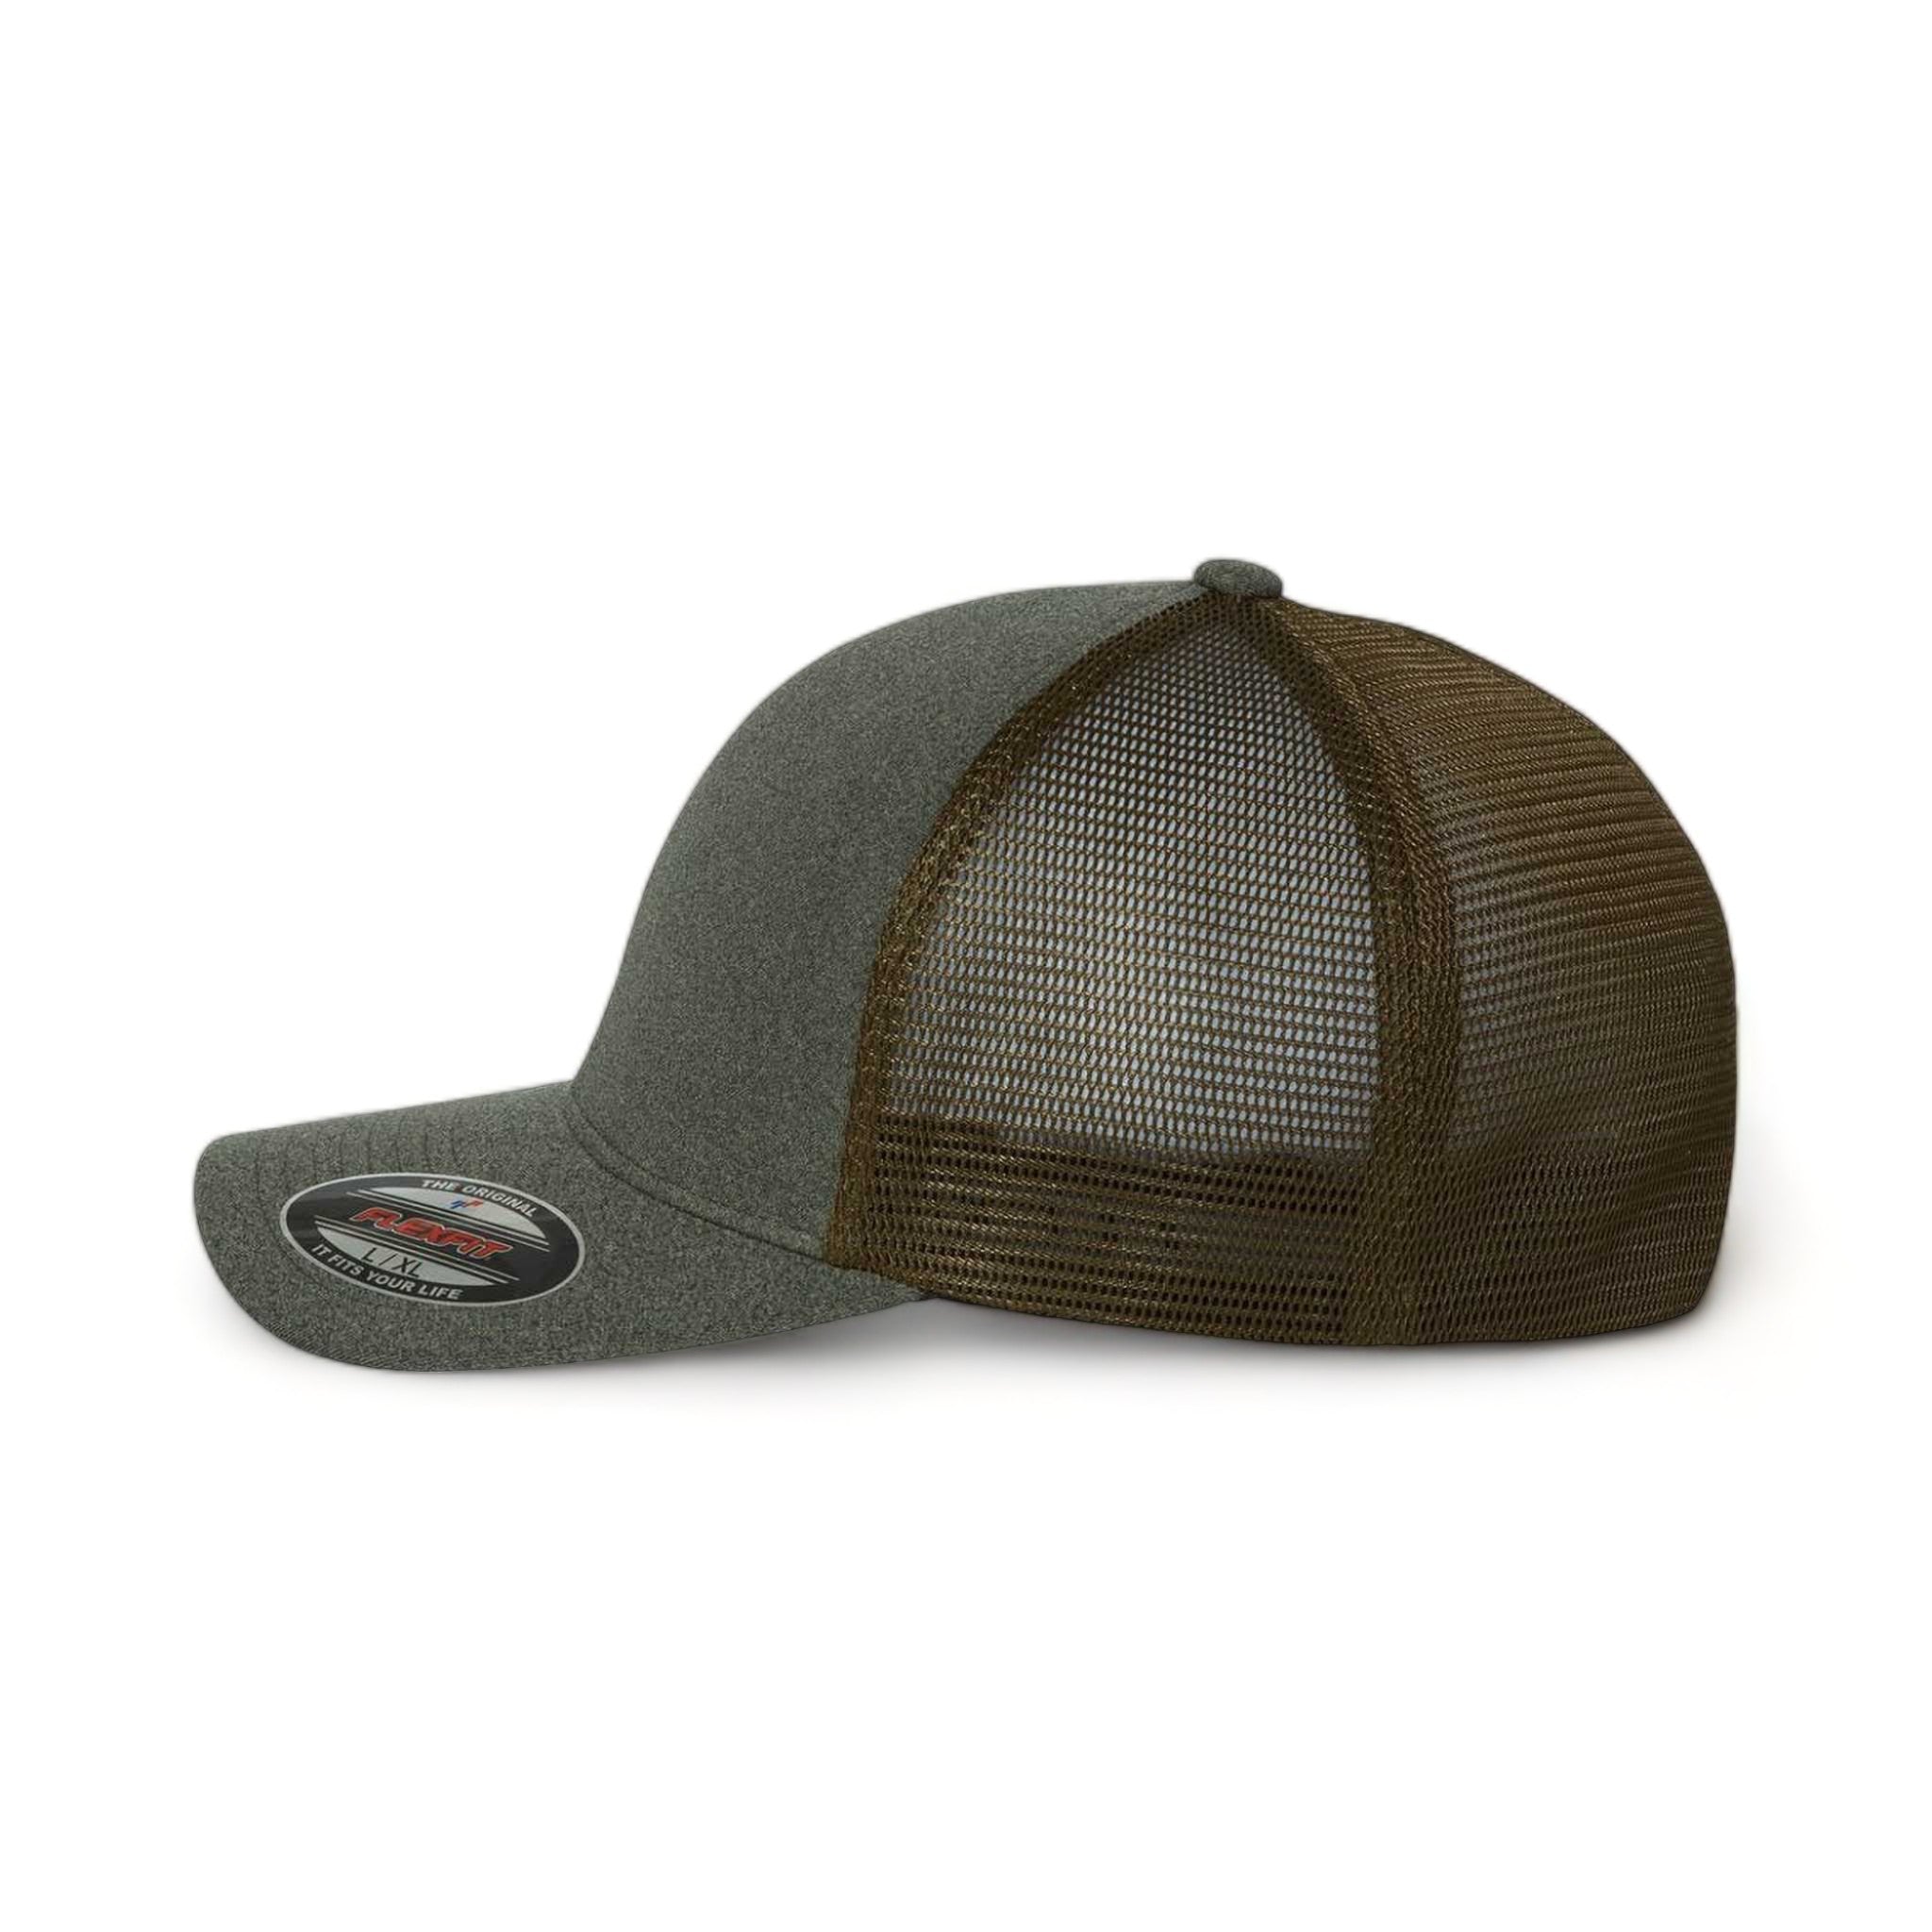 Side view of Flexfit 5511UP custom hat in mélange olive